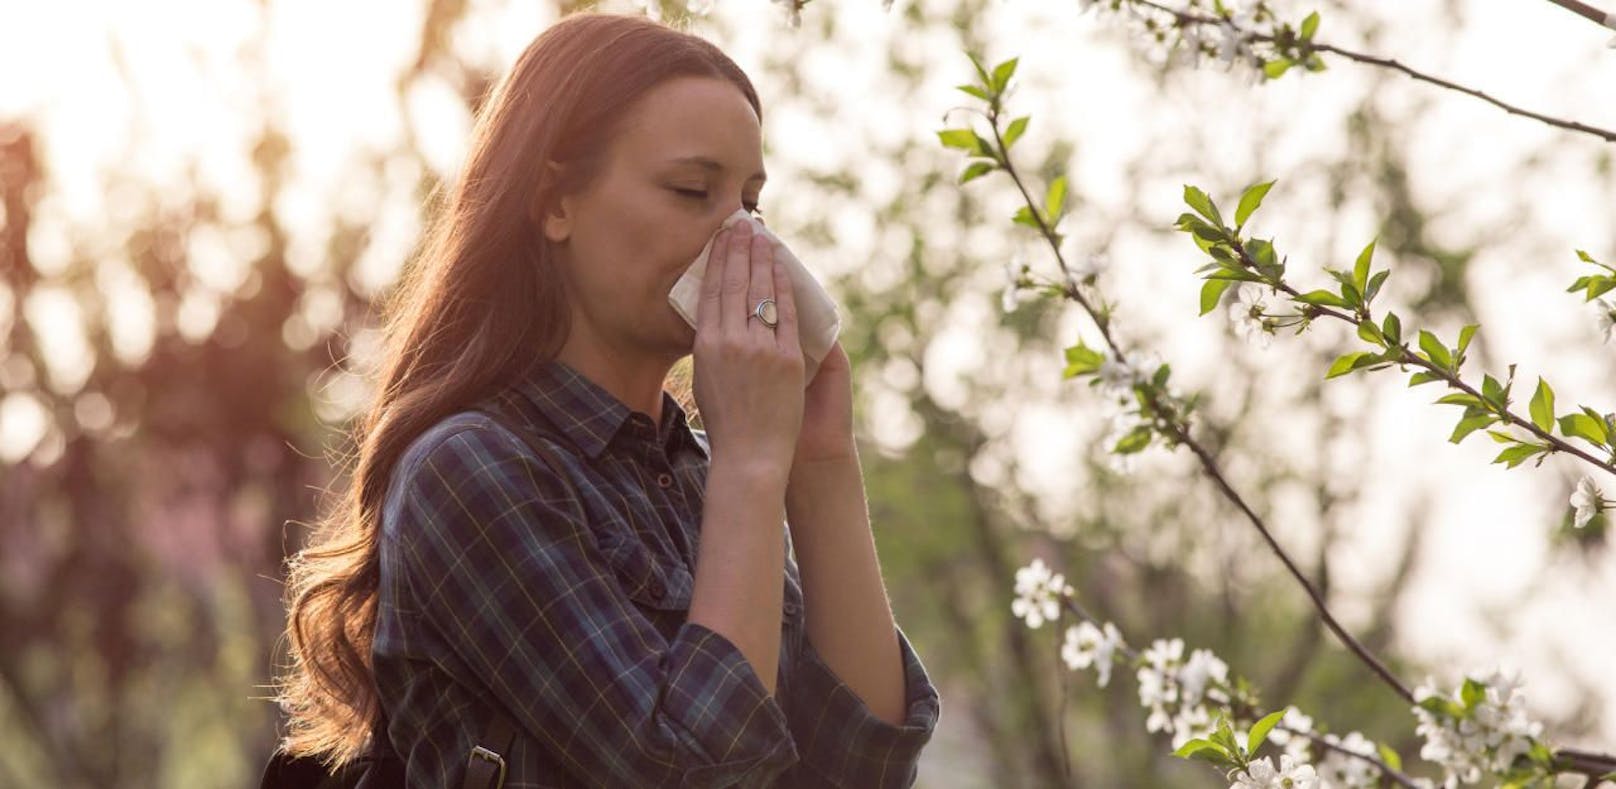 Pollenallergie: Diese Tipps helfen wirklich - Gesundheit | heute.at